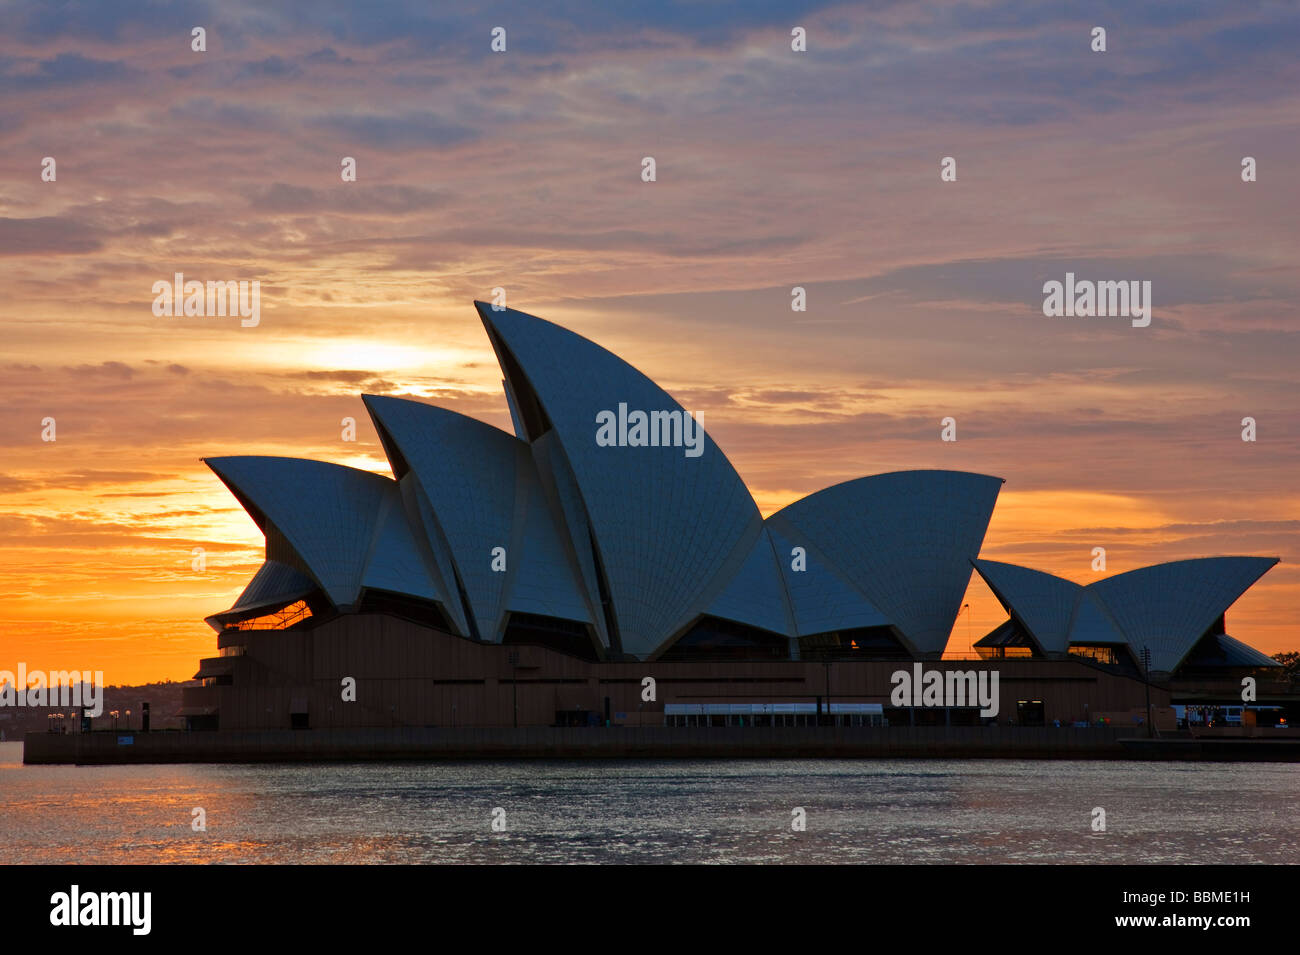 Australia New South Wales. The iconic Sydney Opera House at sunrise. Stock Photo